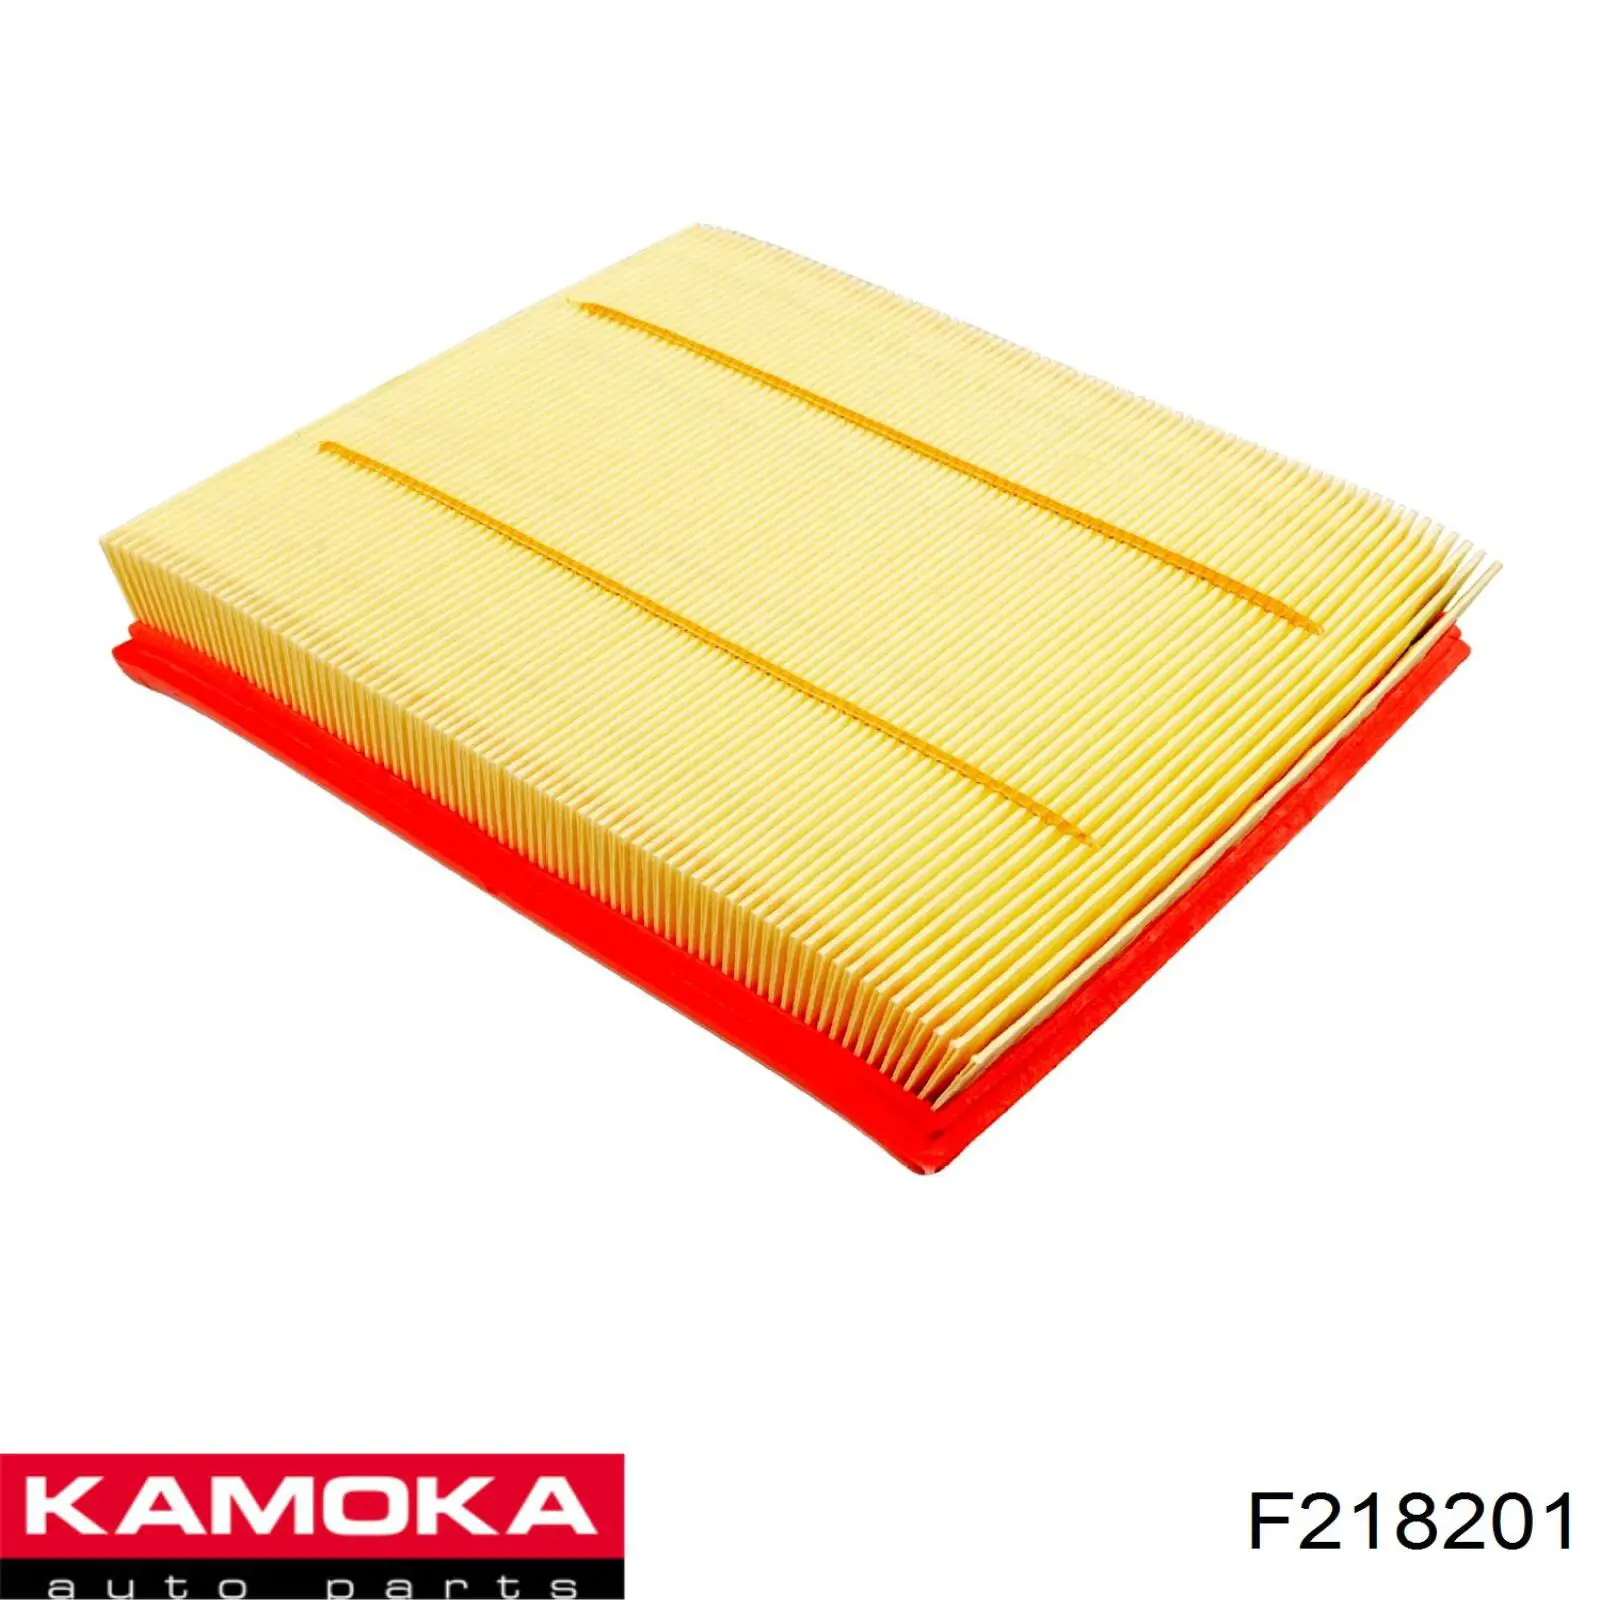 F218201 Kamoka filtro de aire